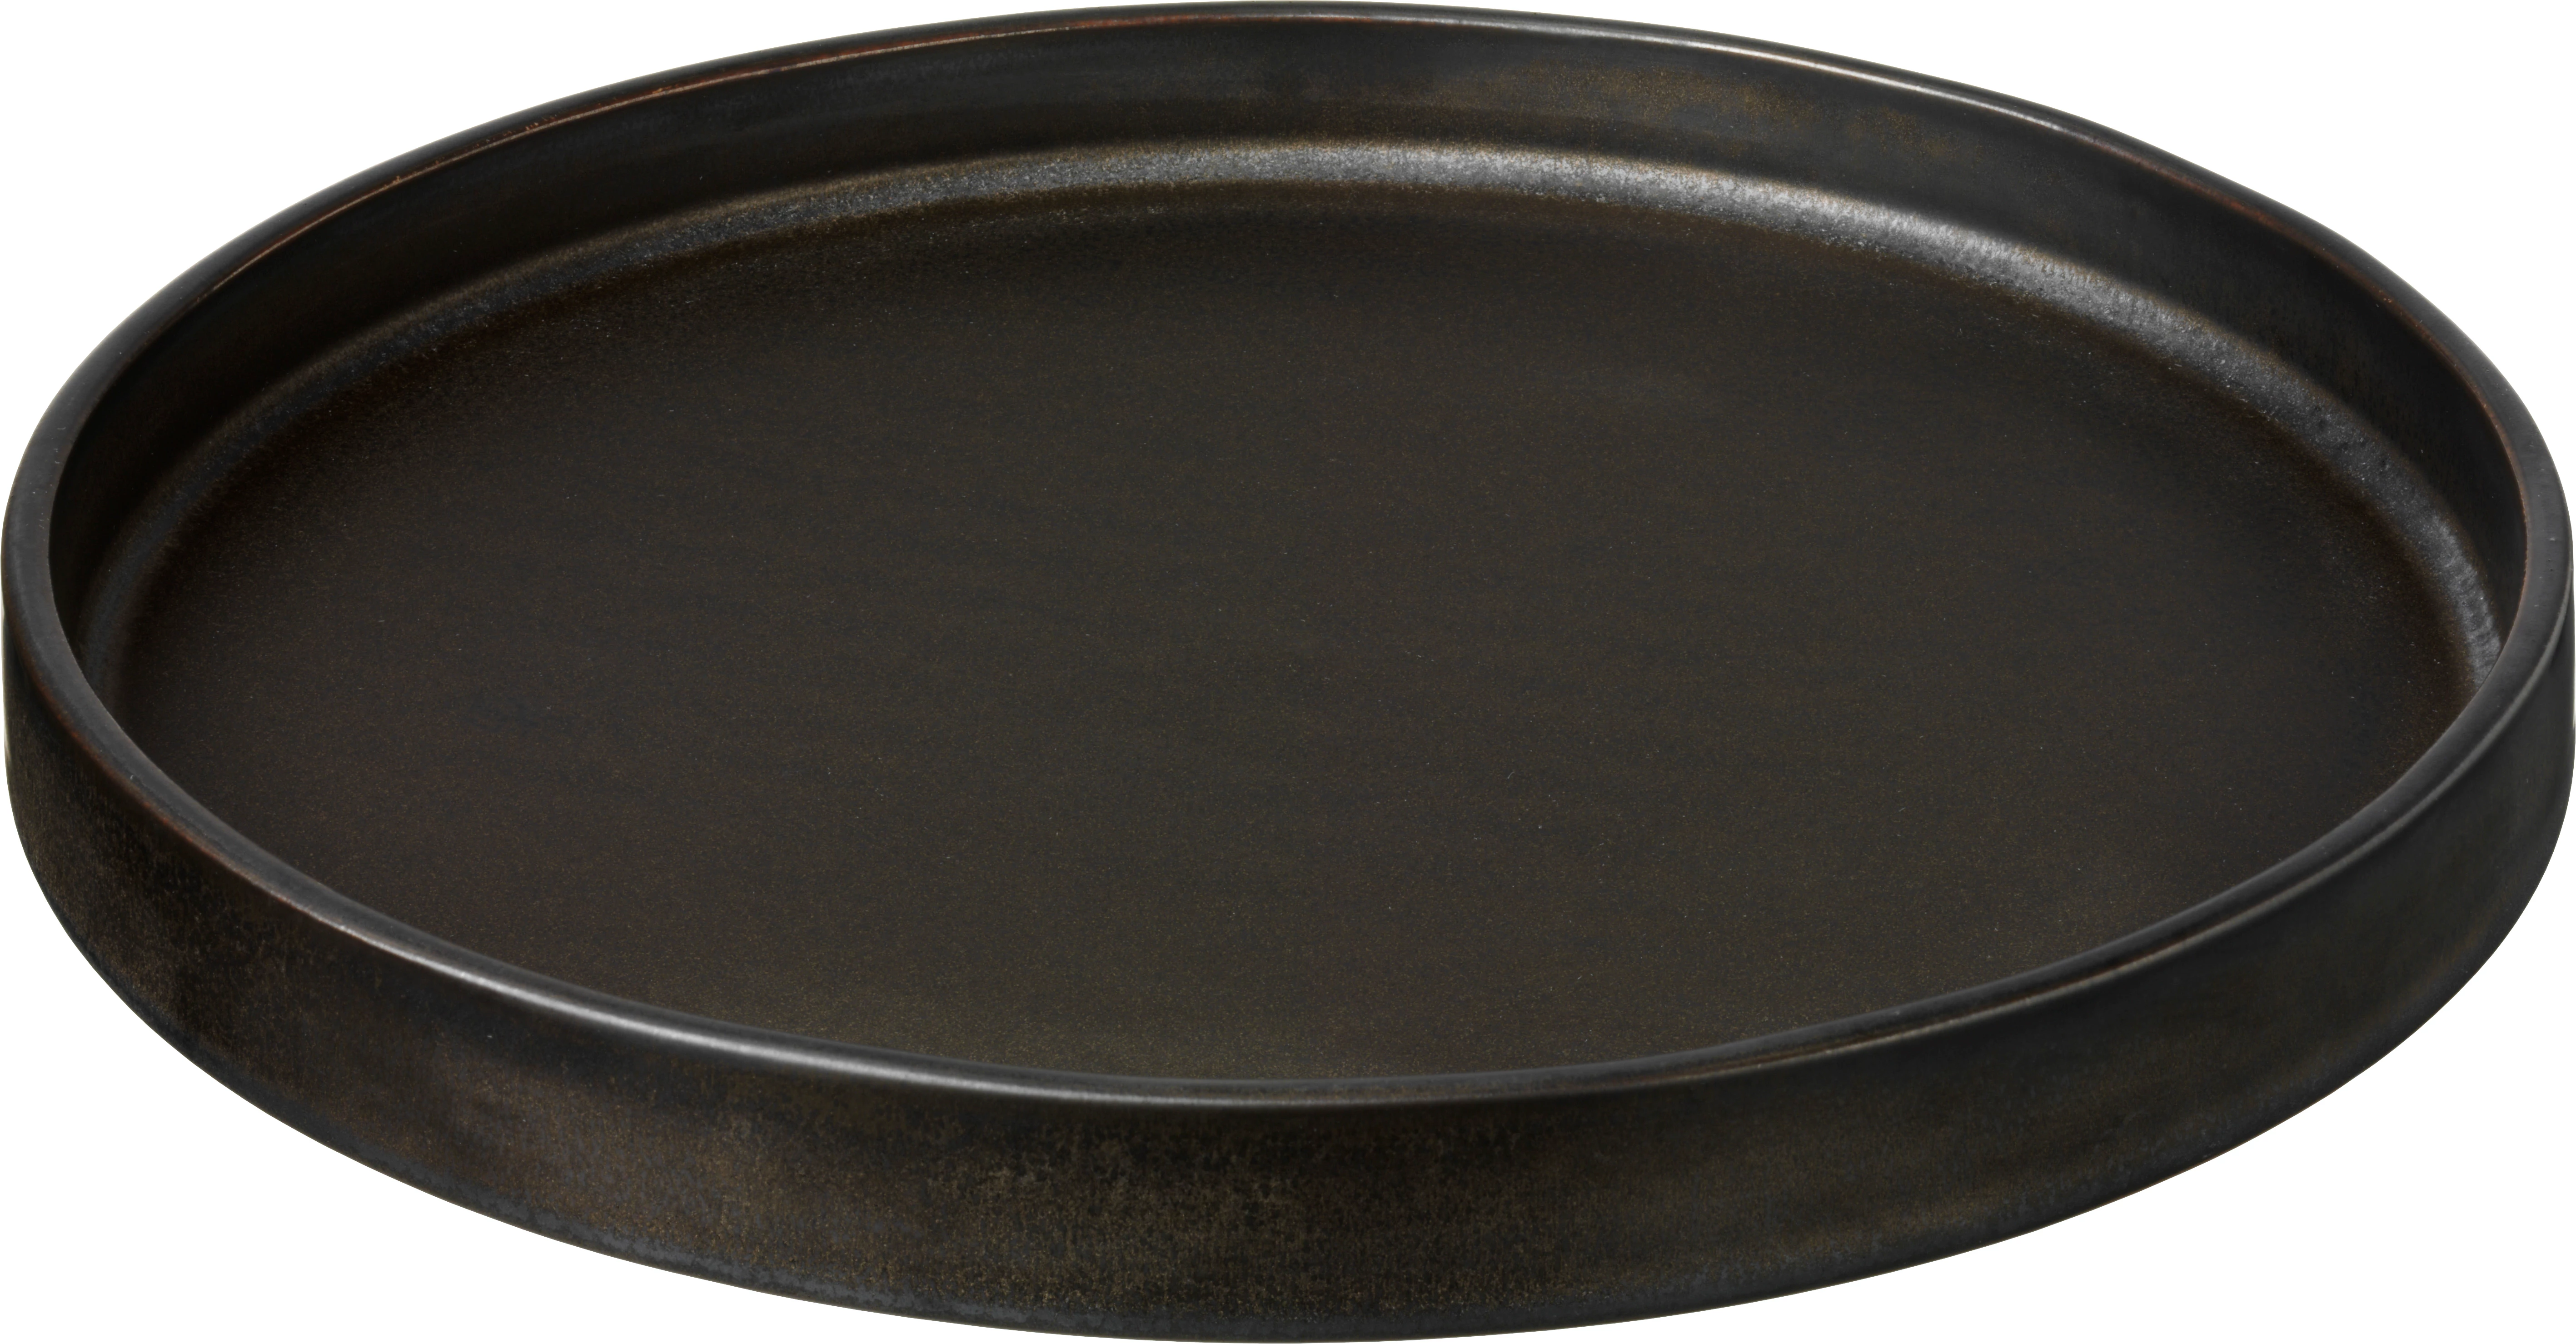 Savannah tallerken uden fane, flad, brun, ø24 cm